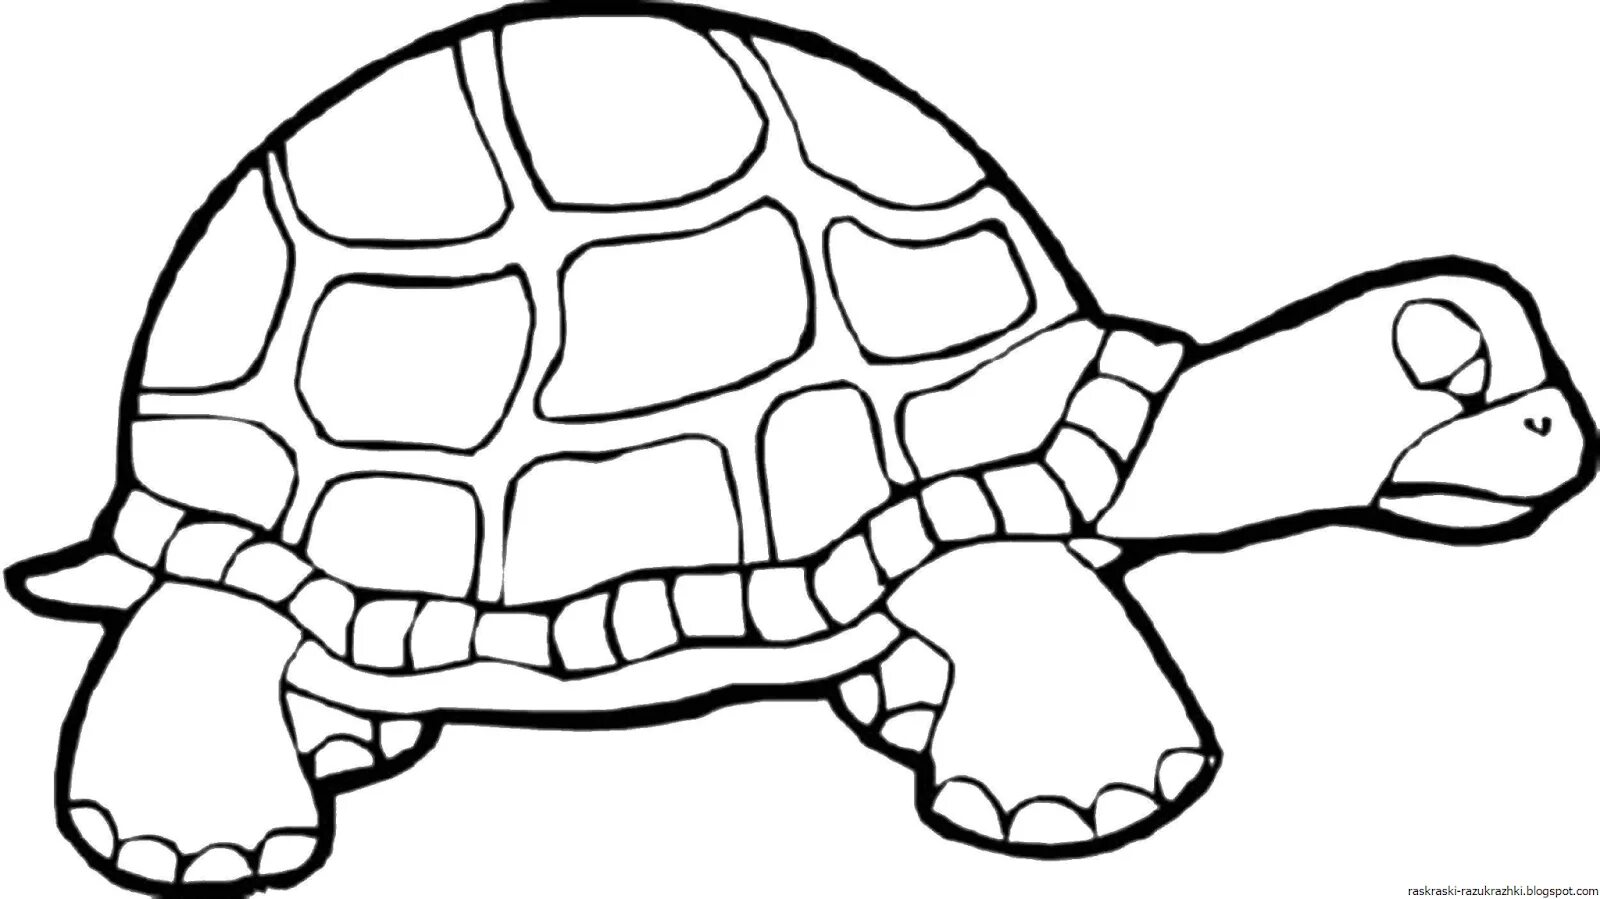 Увлекательная раскраска черепаха для детей 3-4 лет